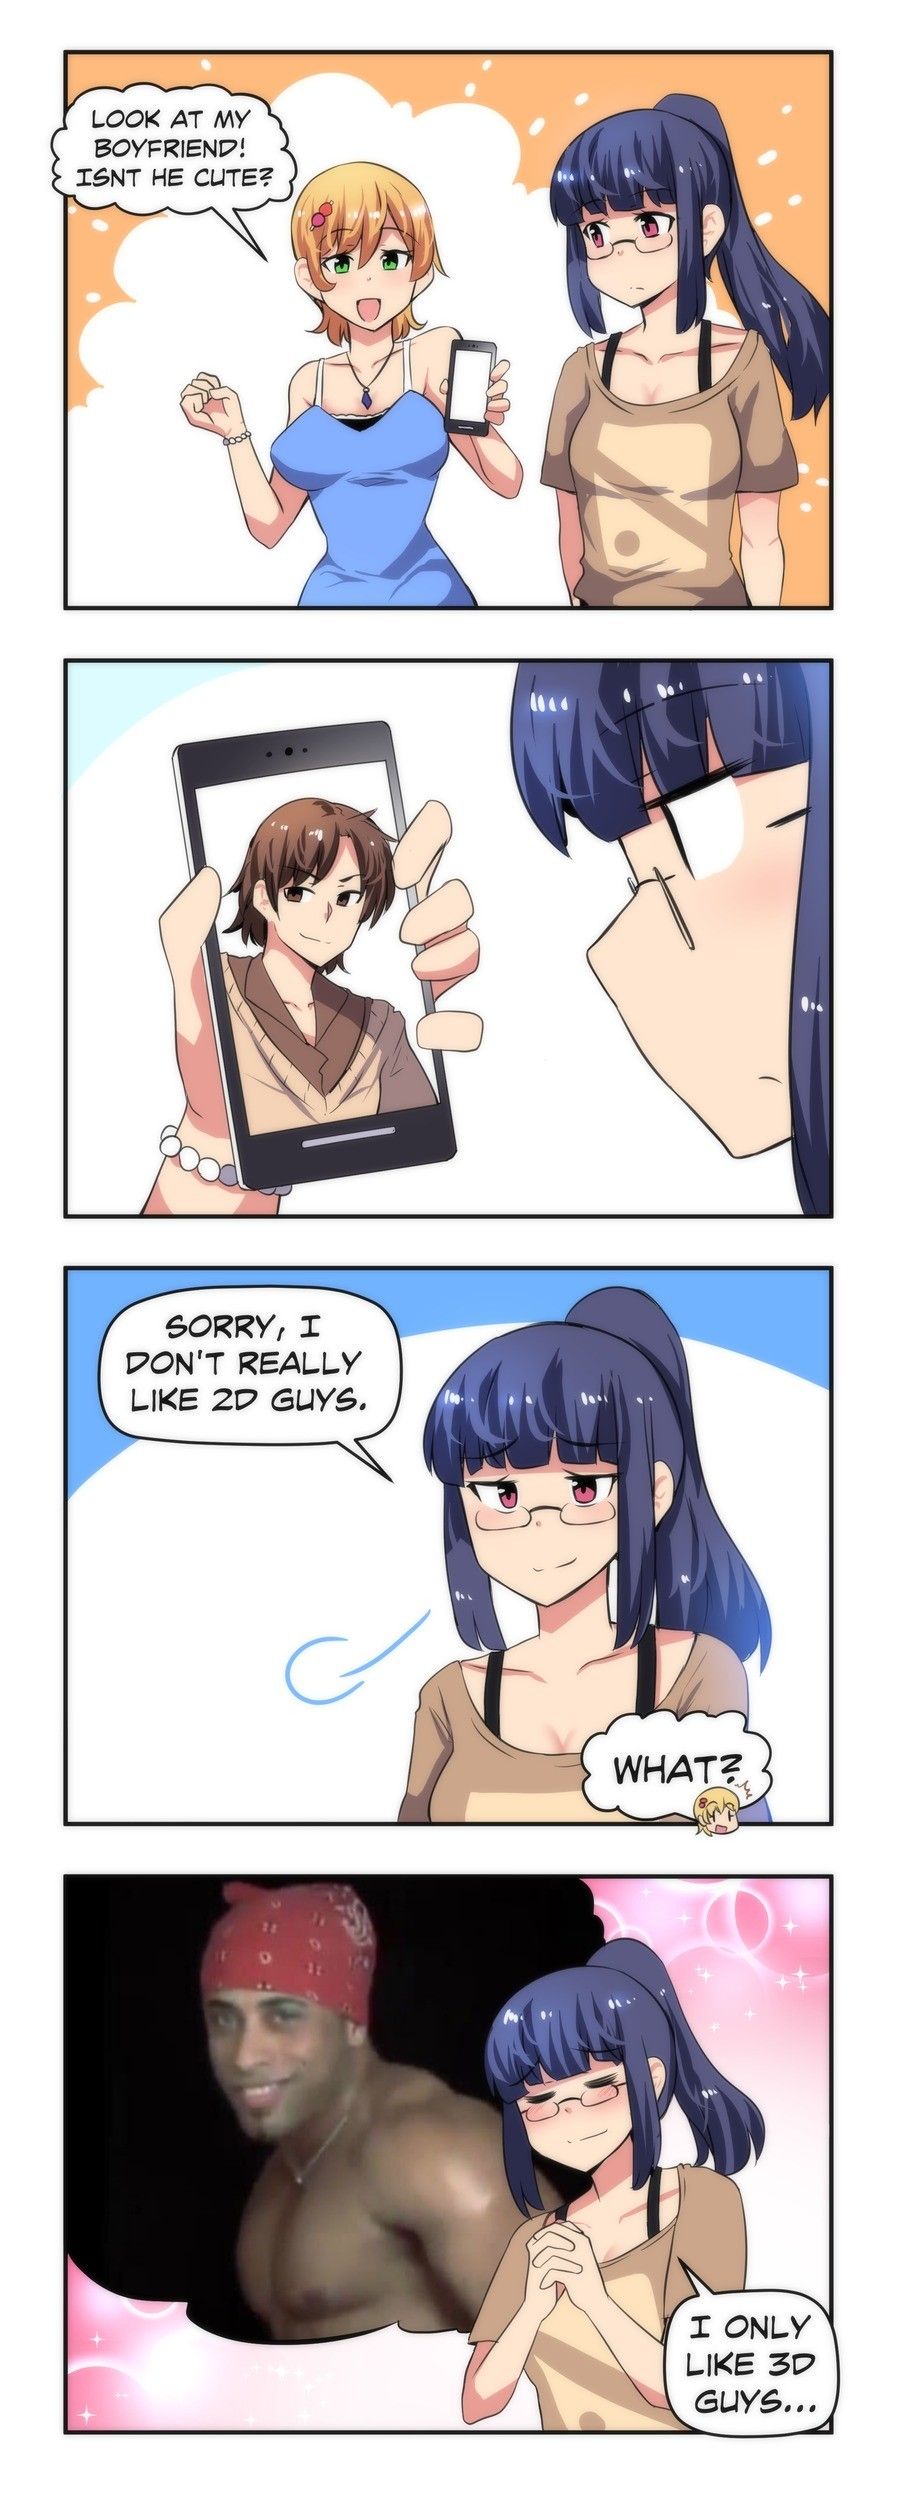 Anime Girls Love You Too